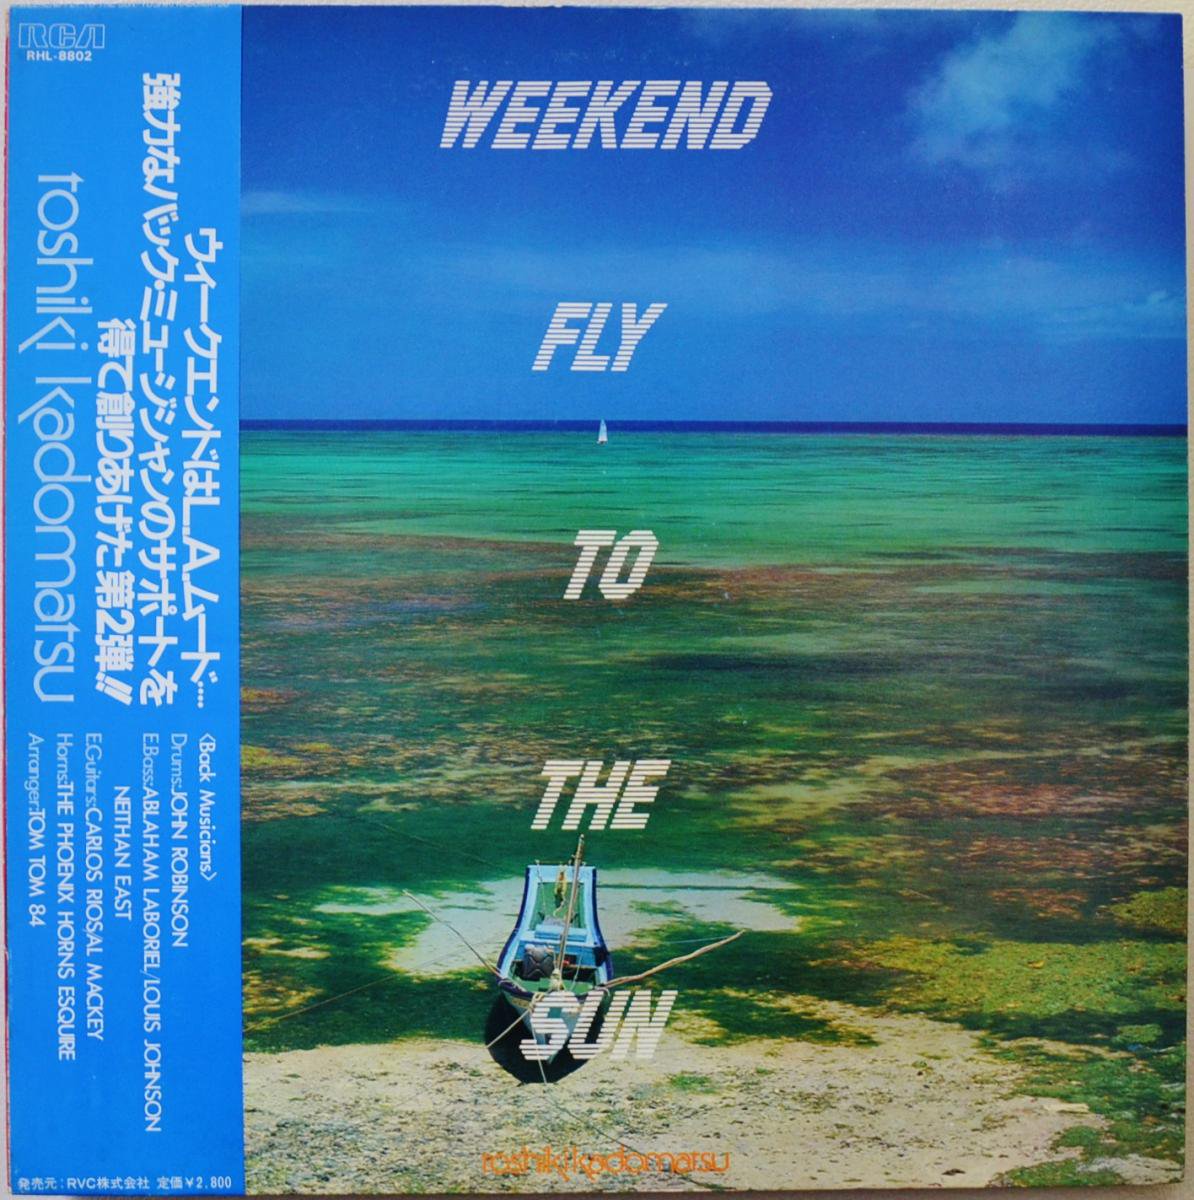 角松敏生 WEEKEND FLY TO THE SUN シティポップLPレコード-